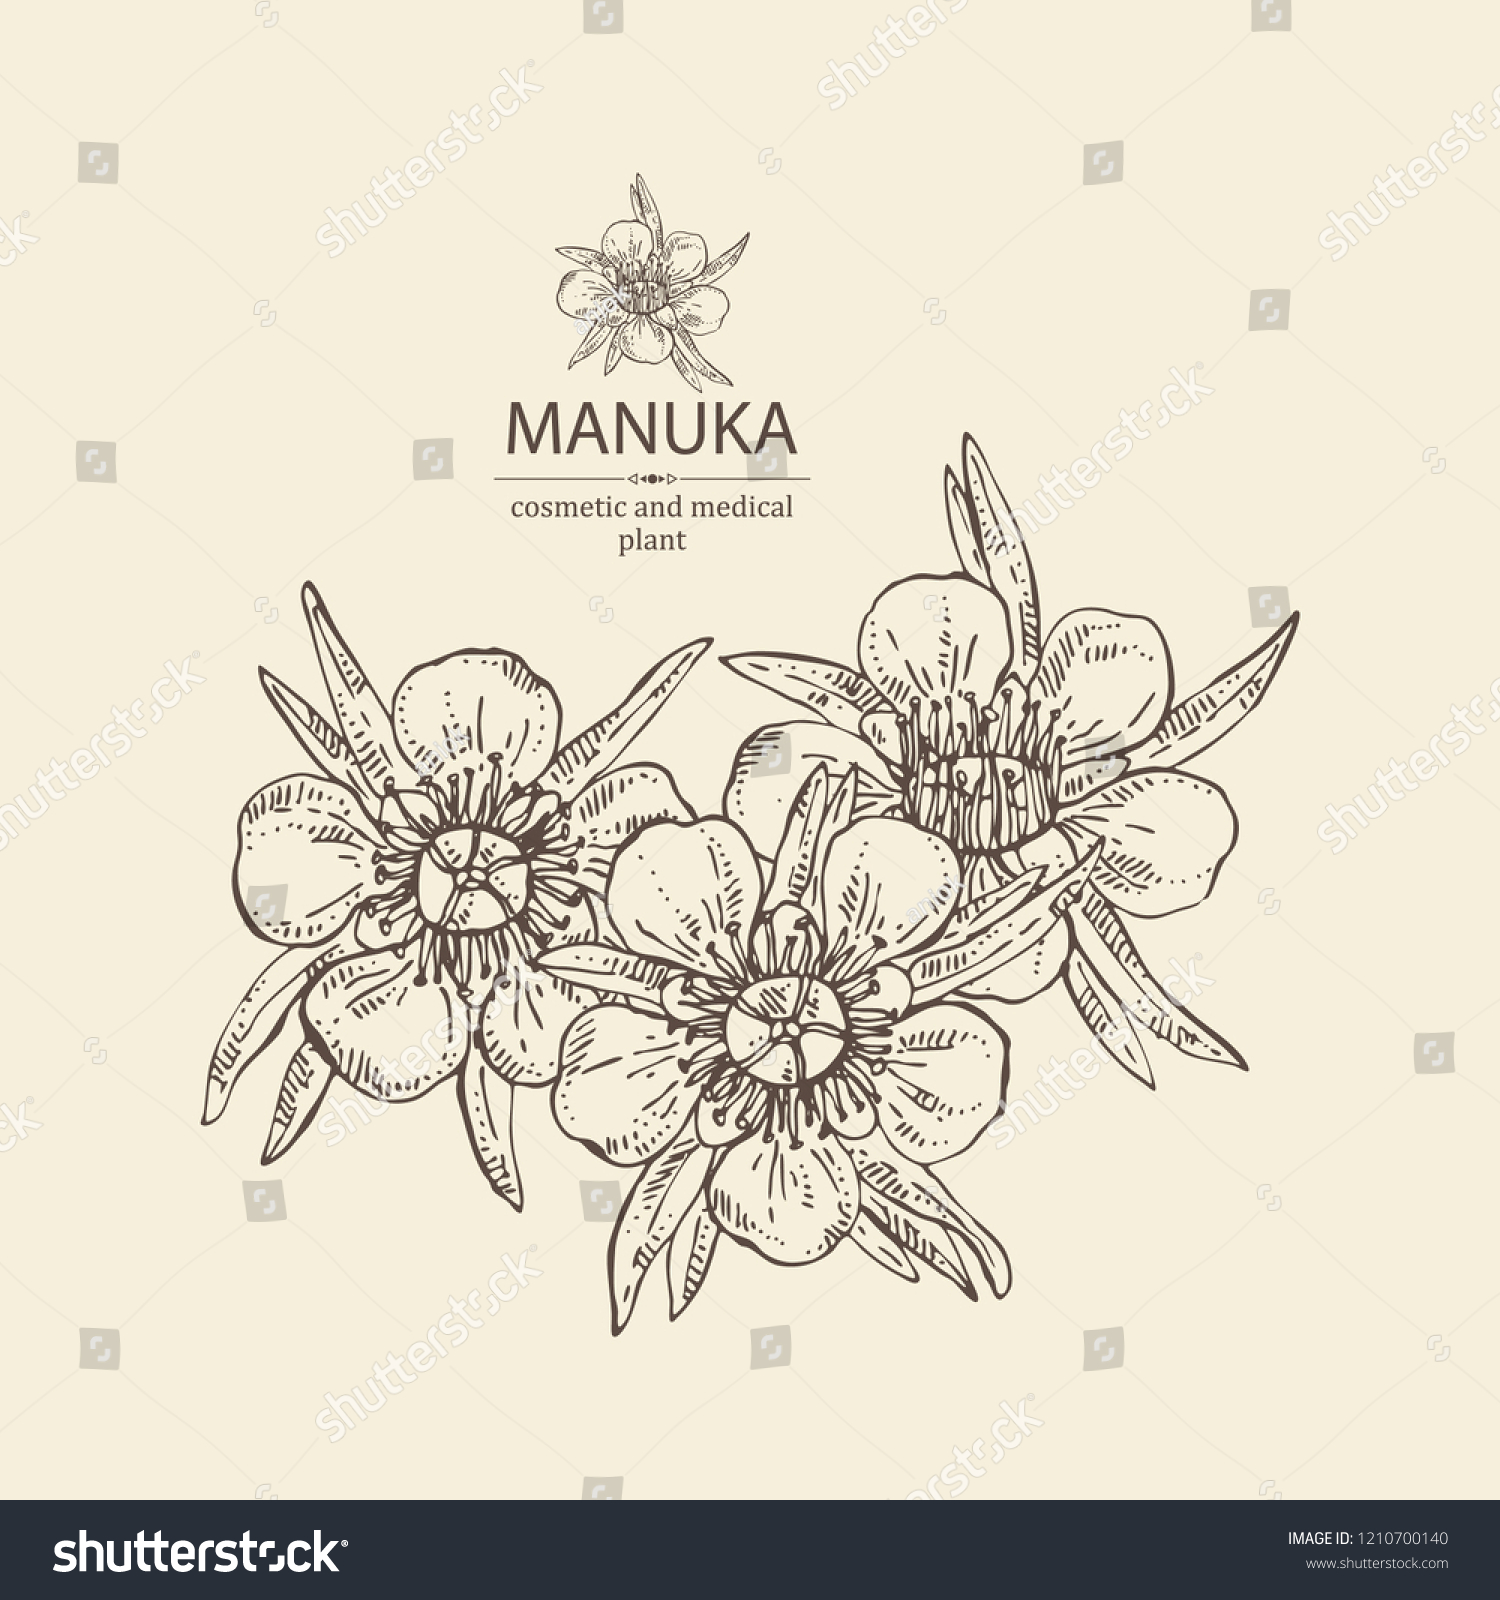 マヌカ マヌカの葉と花 美容 医療施設 ベクター手描きのイラスト のベクター画像素材 ロイヤリティフリー